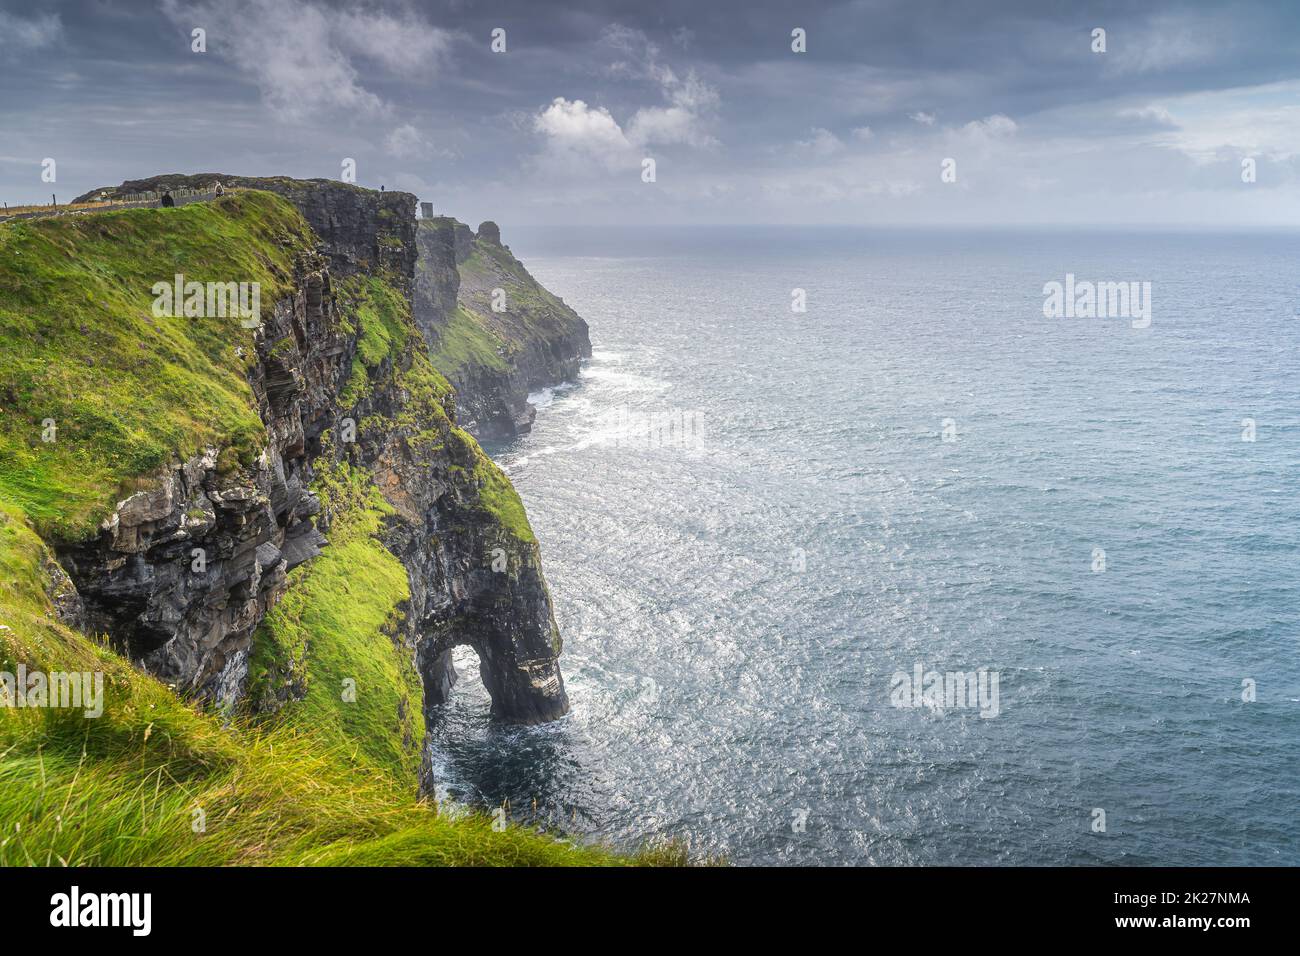 Arche de roche naturelle, faisant partie des falaises emblématiques de Moher, en Irlande Banque D'Images